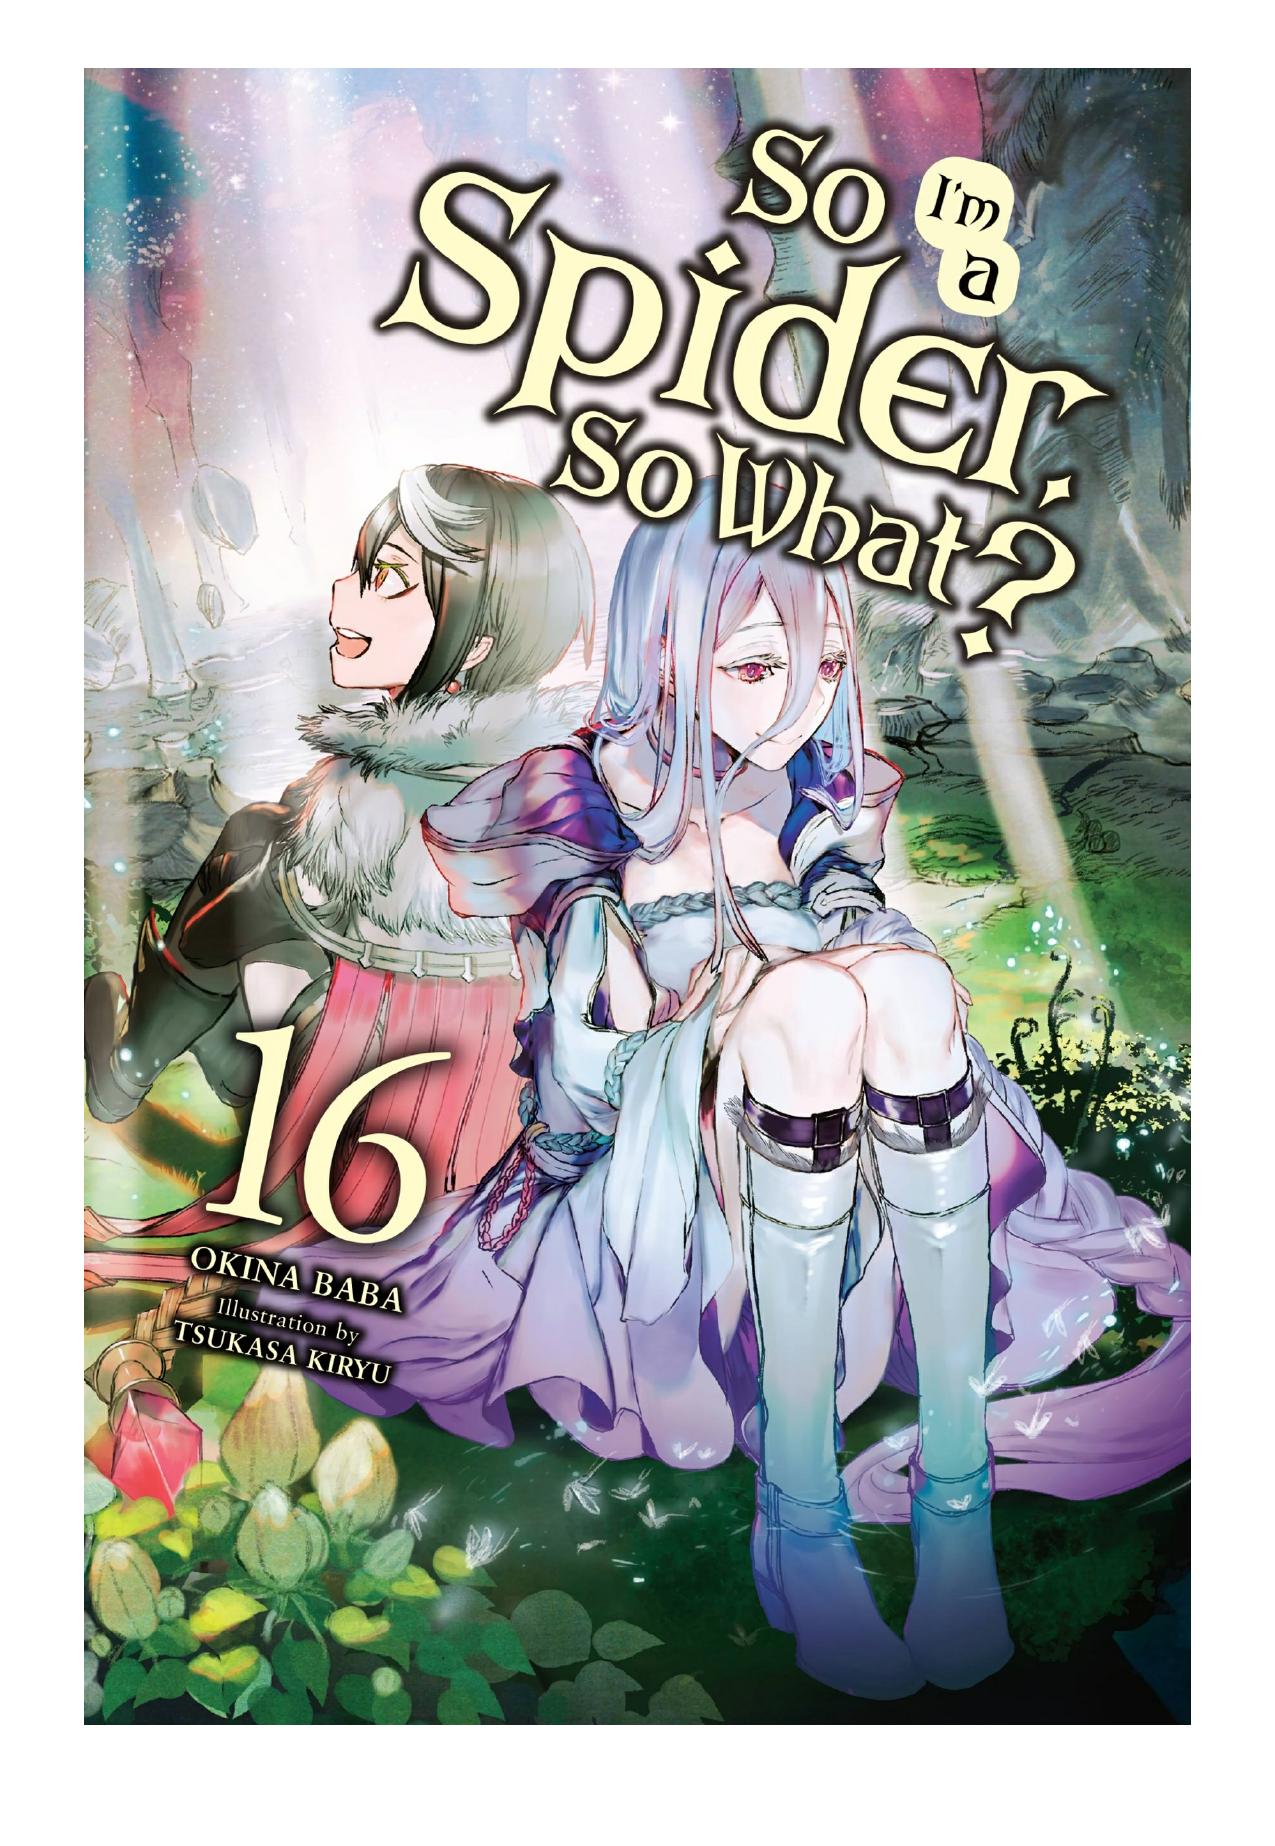 So Iâm a Spider, So What?, Vol. 16 by Okina Baba & Tsukasa Kiryu